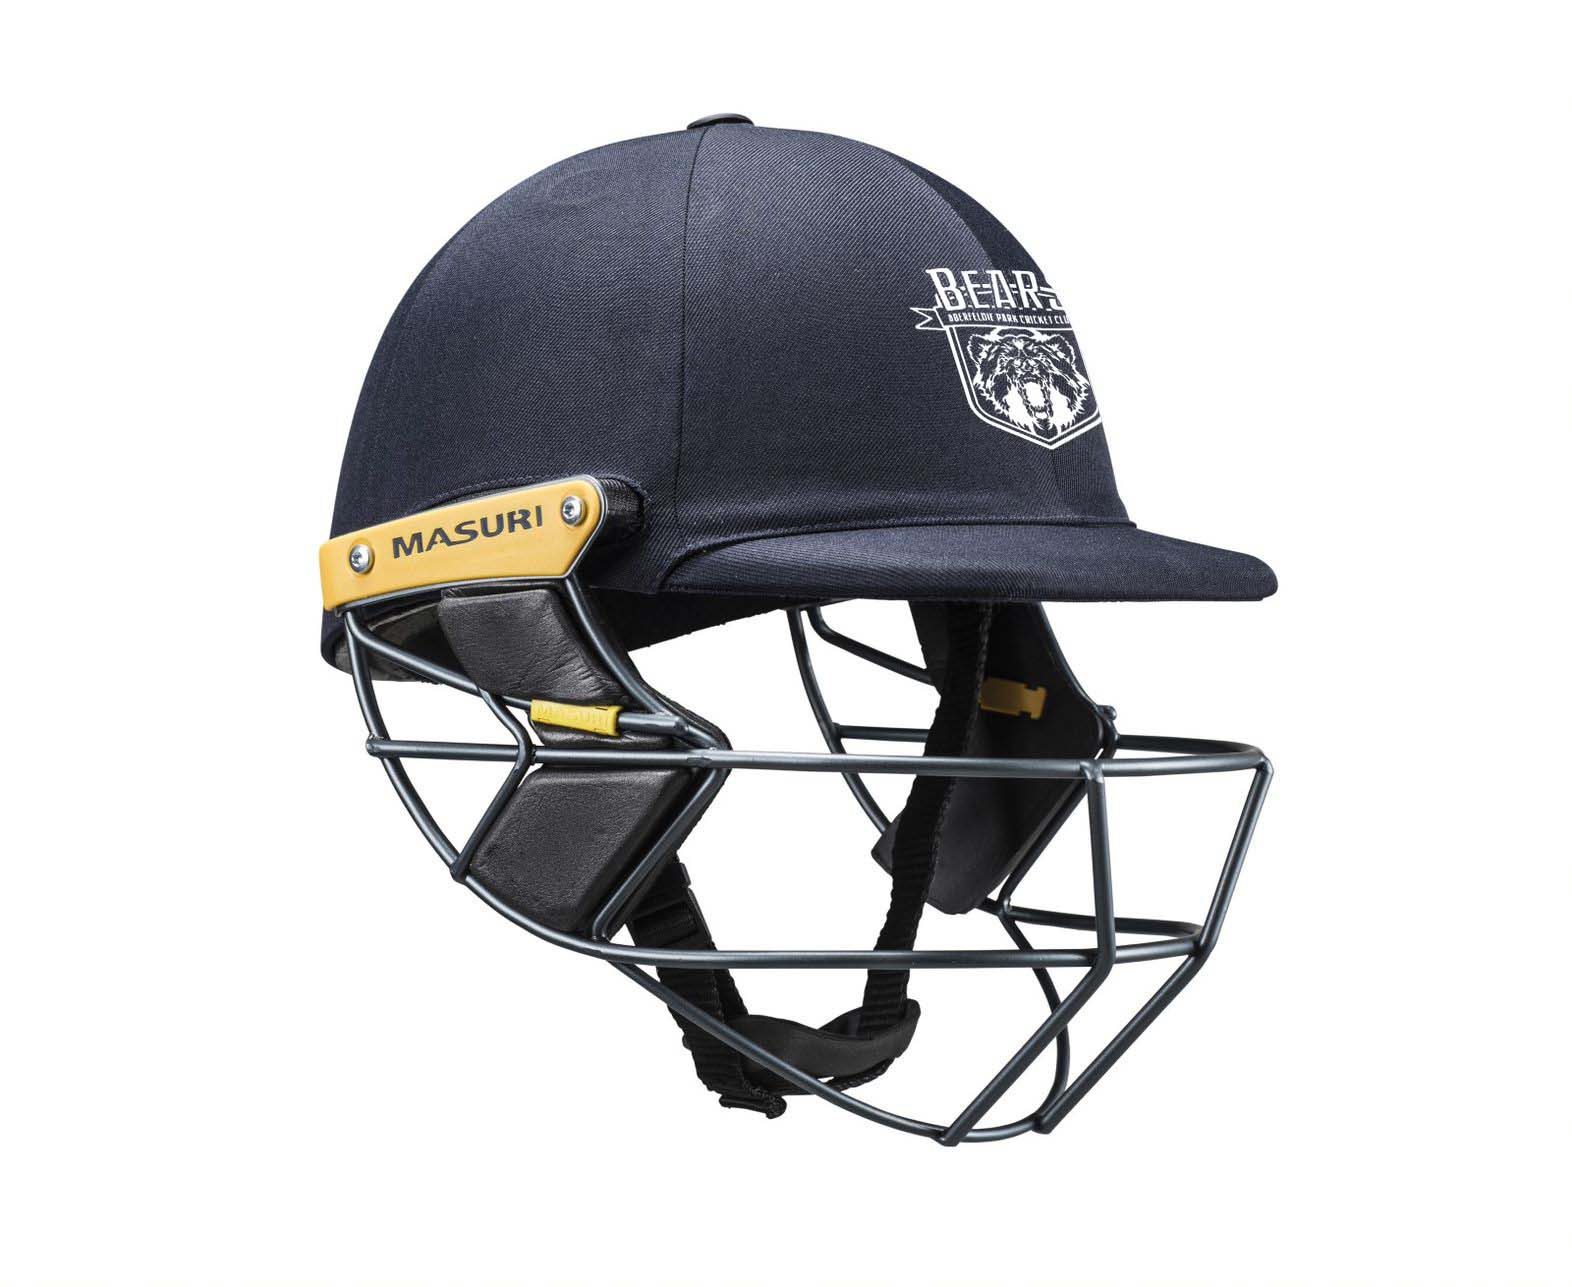 Masuri Club Helmet Aberfeldie Park Cricket Club Helmet